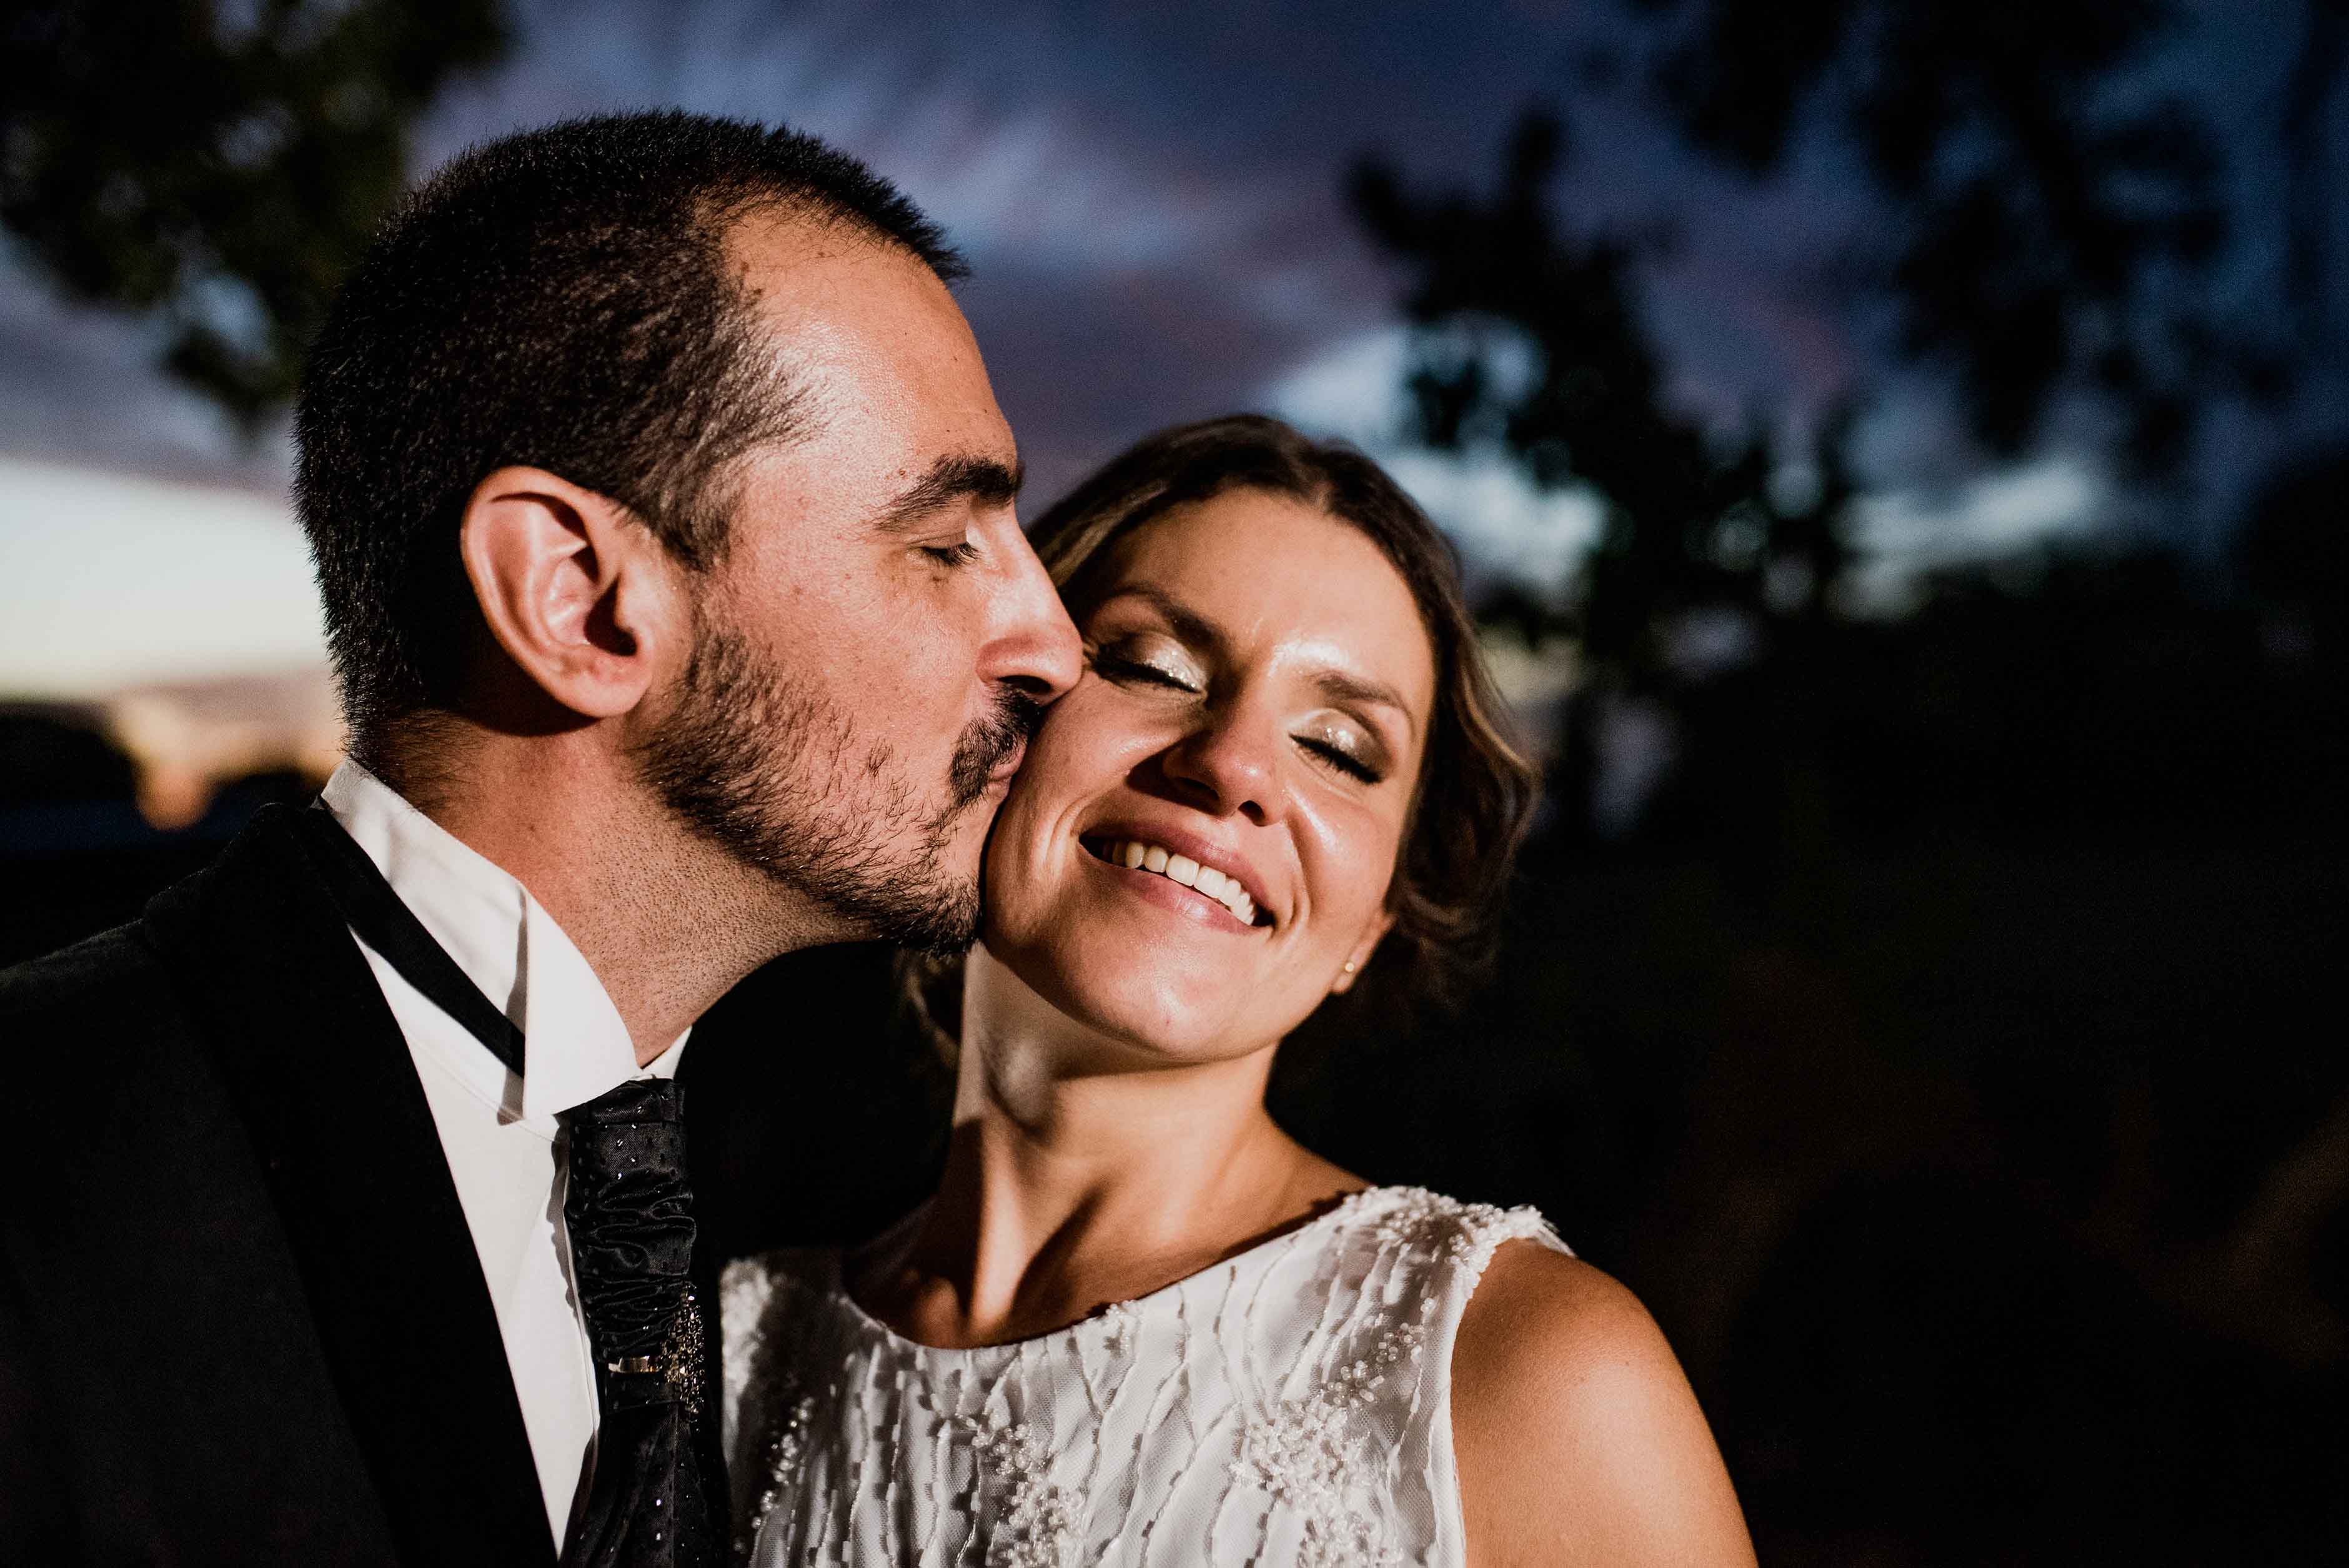 Fotos de la boda de Ani y Munir en Rosario realizadas por Bucle Fotografias Flor Bosio y Caro Clerici